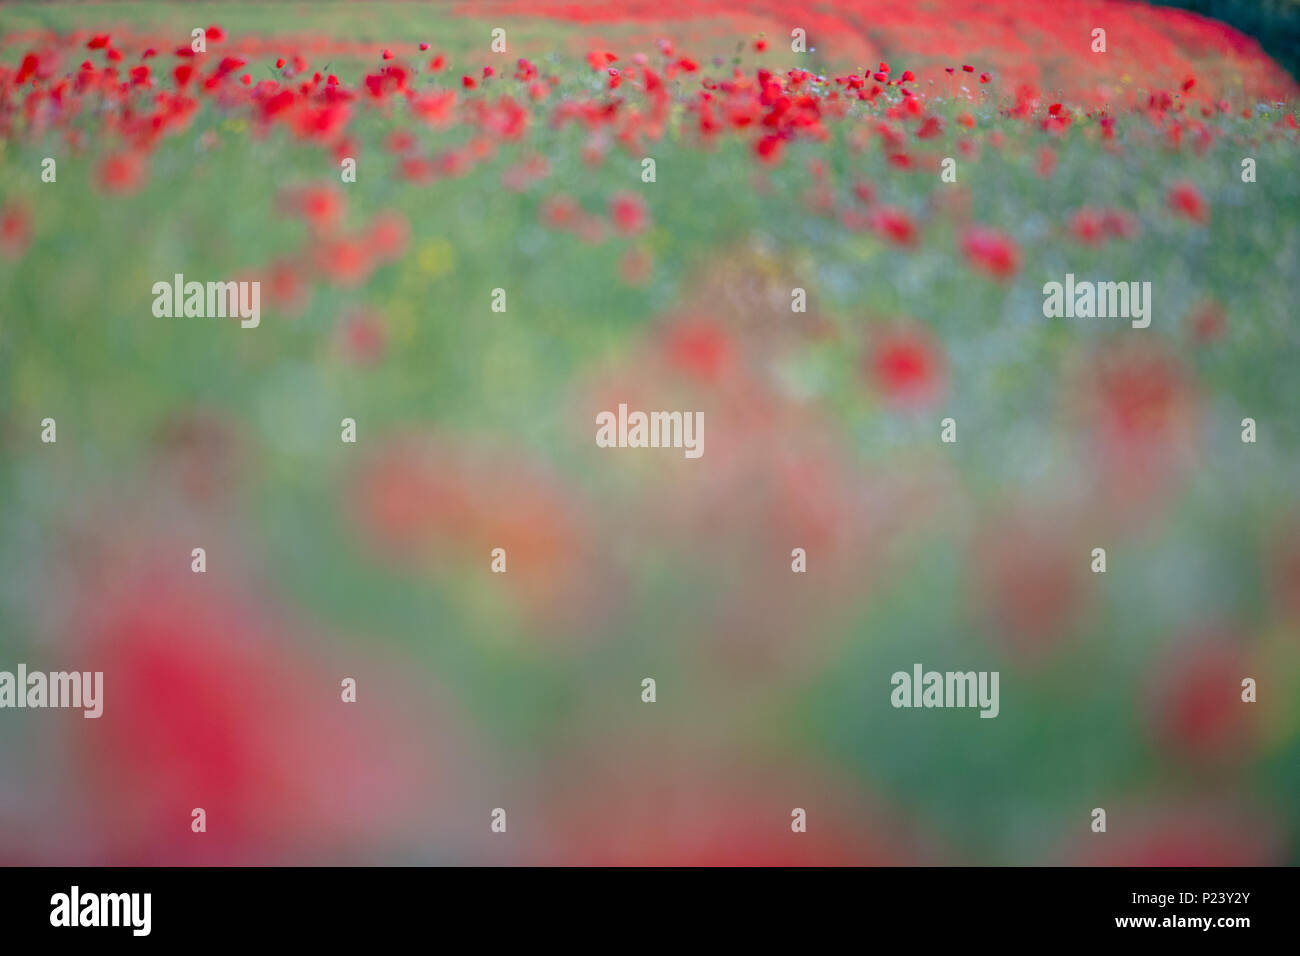 Des problèmes de mise au point des images de coquelicots rouges colorés pour un Monet simular peinture impressionniste. Banque D'Images